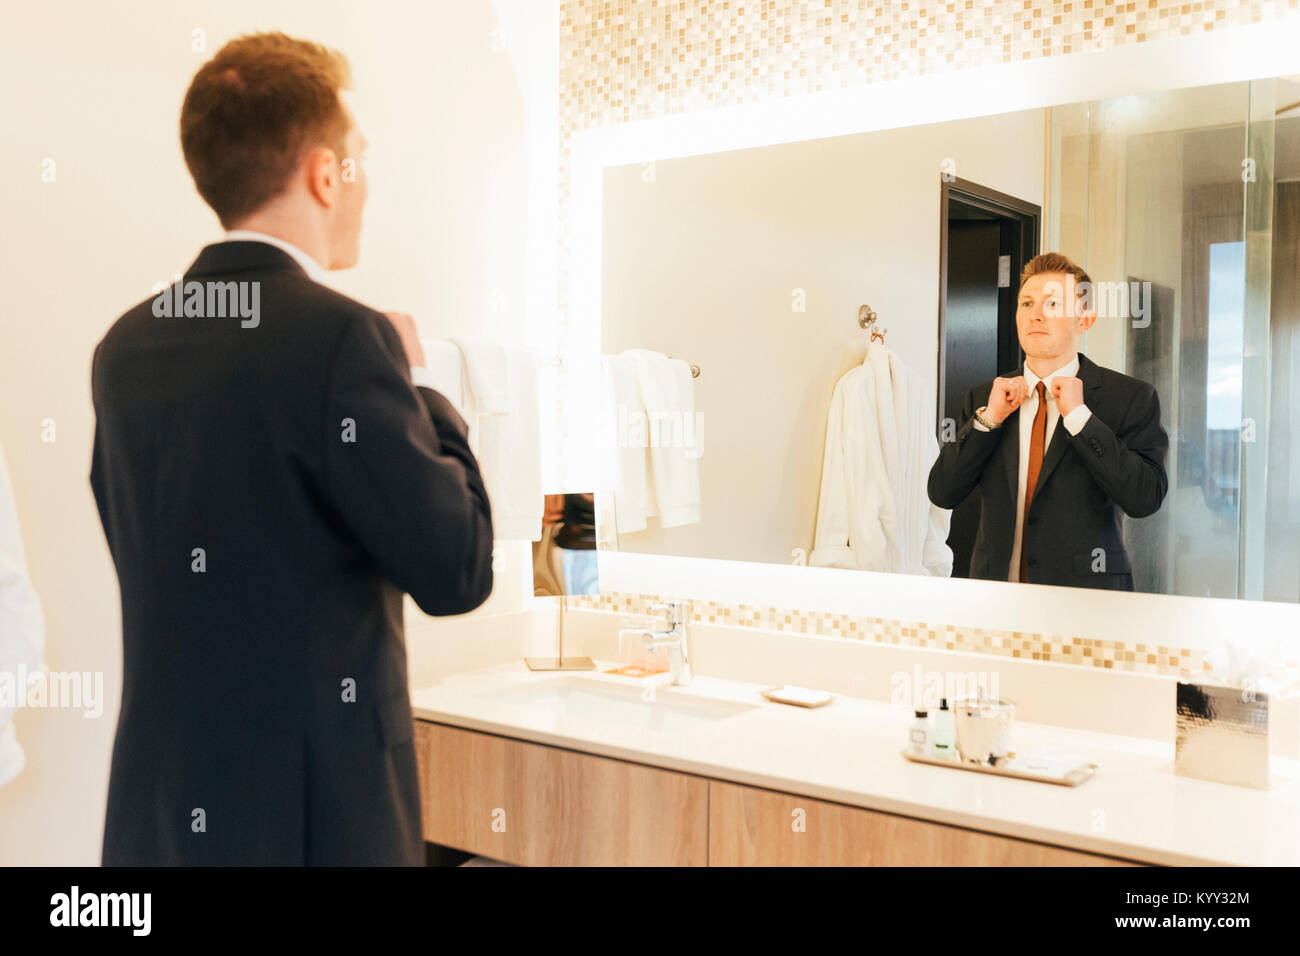 Unternehmer einstellen Krawatte im Hotel Bad Stockfoto